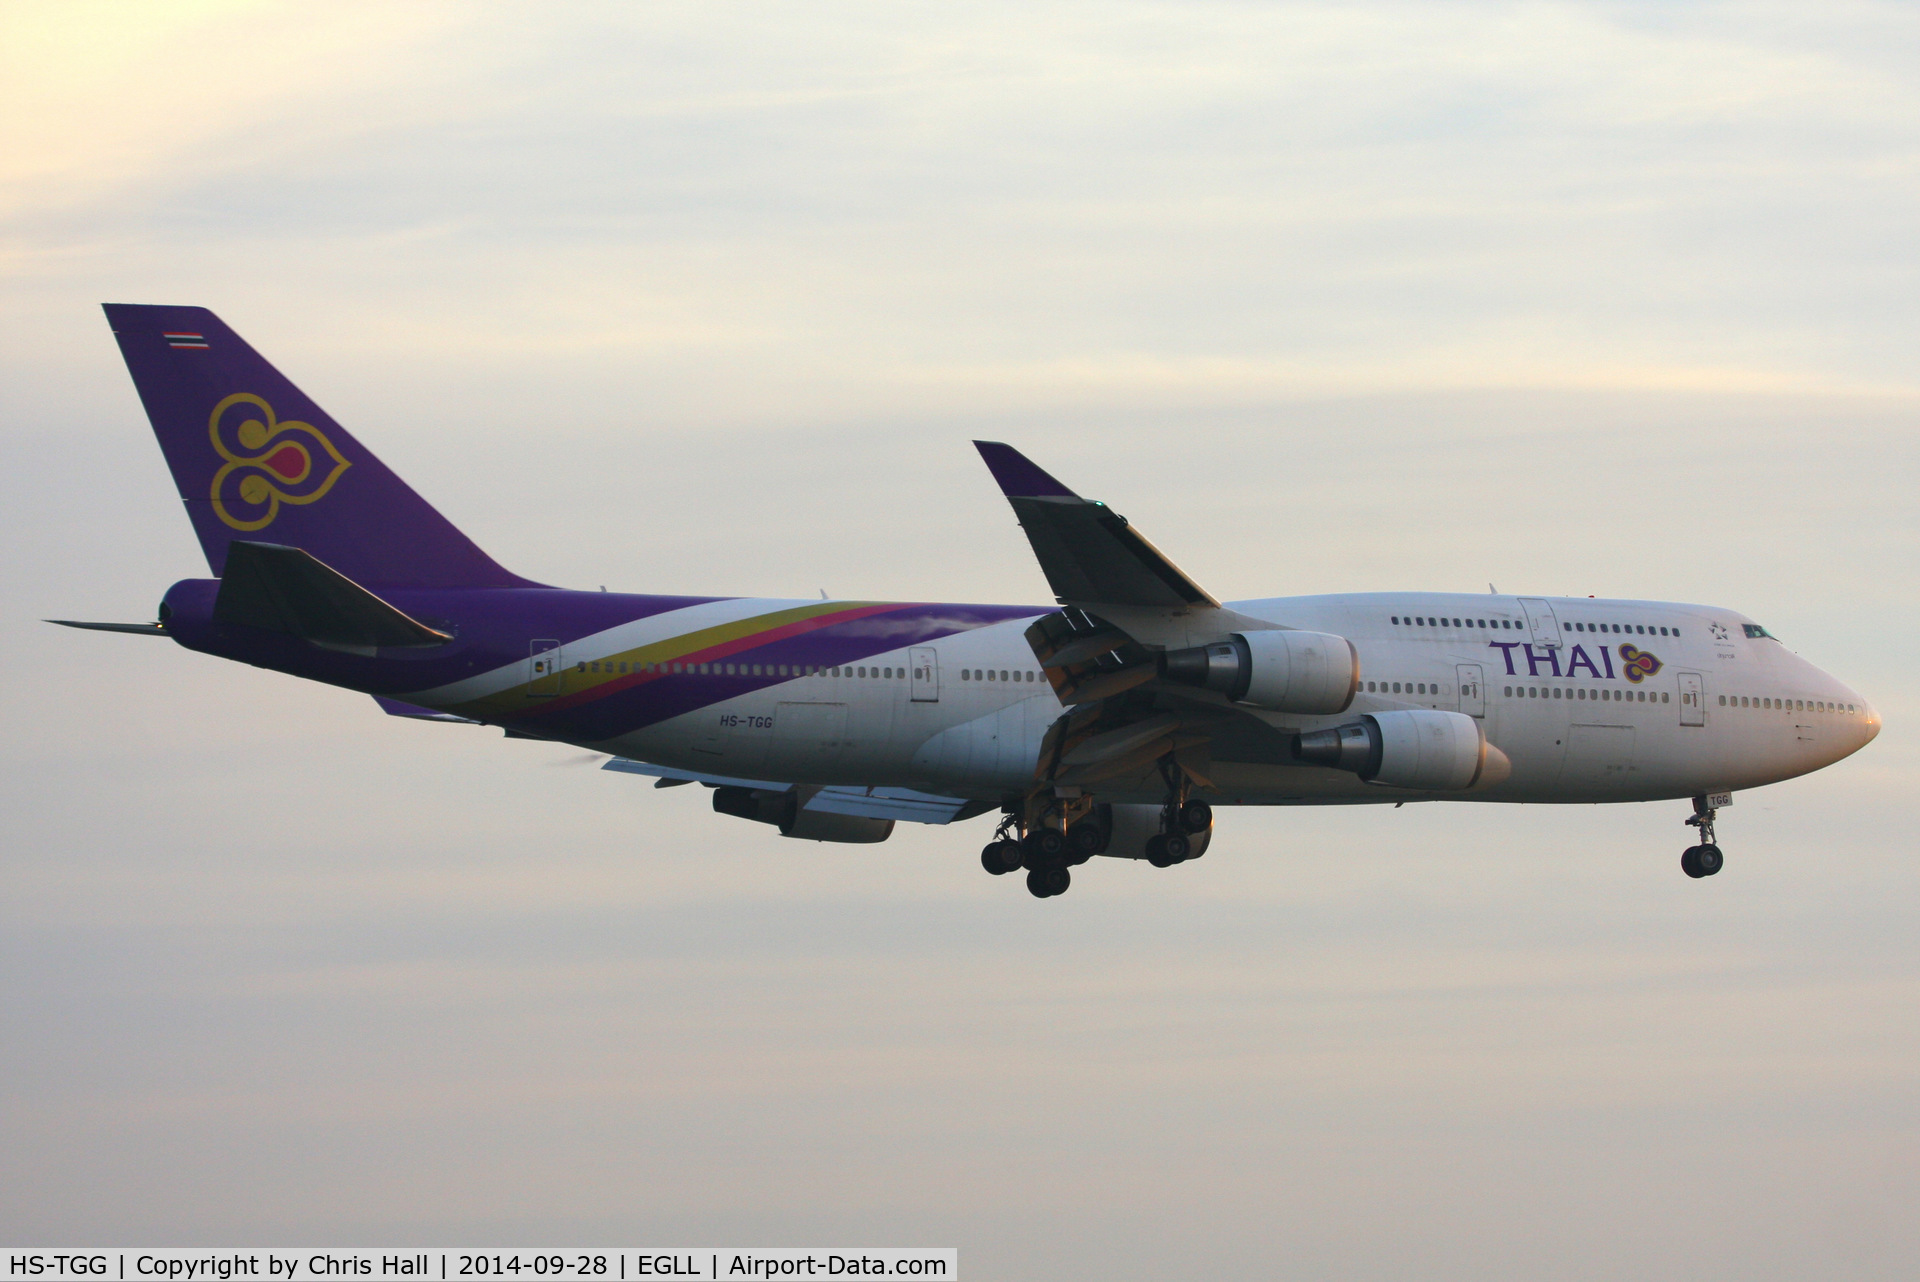 HS-TGG, 2003 Boeing 747-4D7 C/N 33771, Thai Airways International